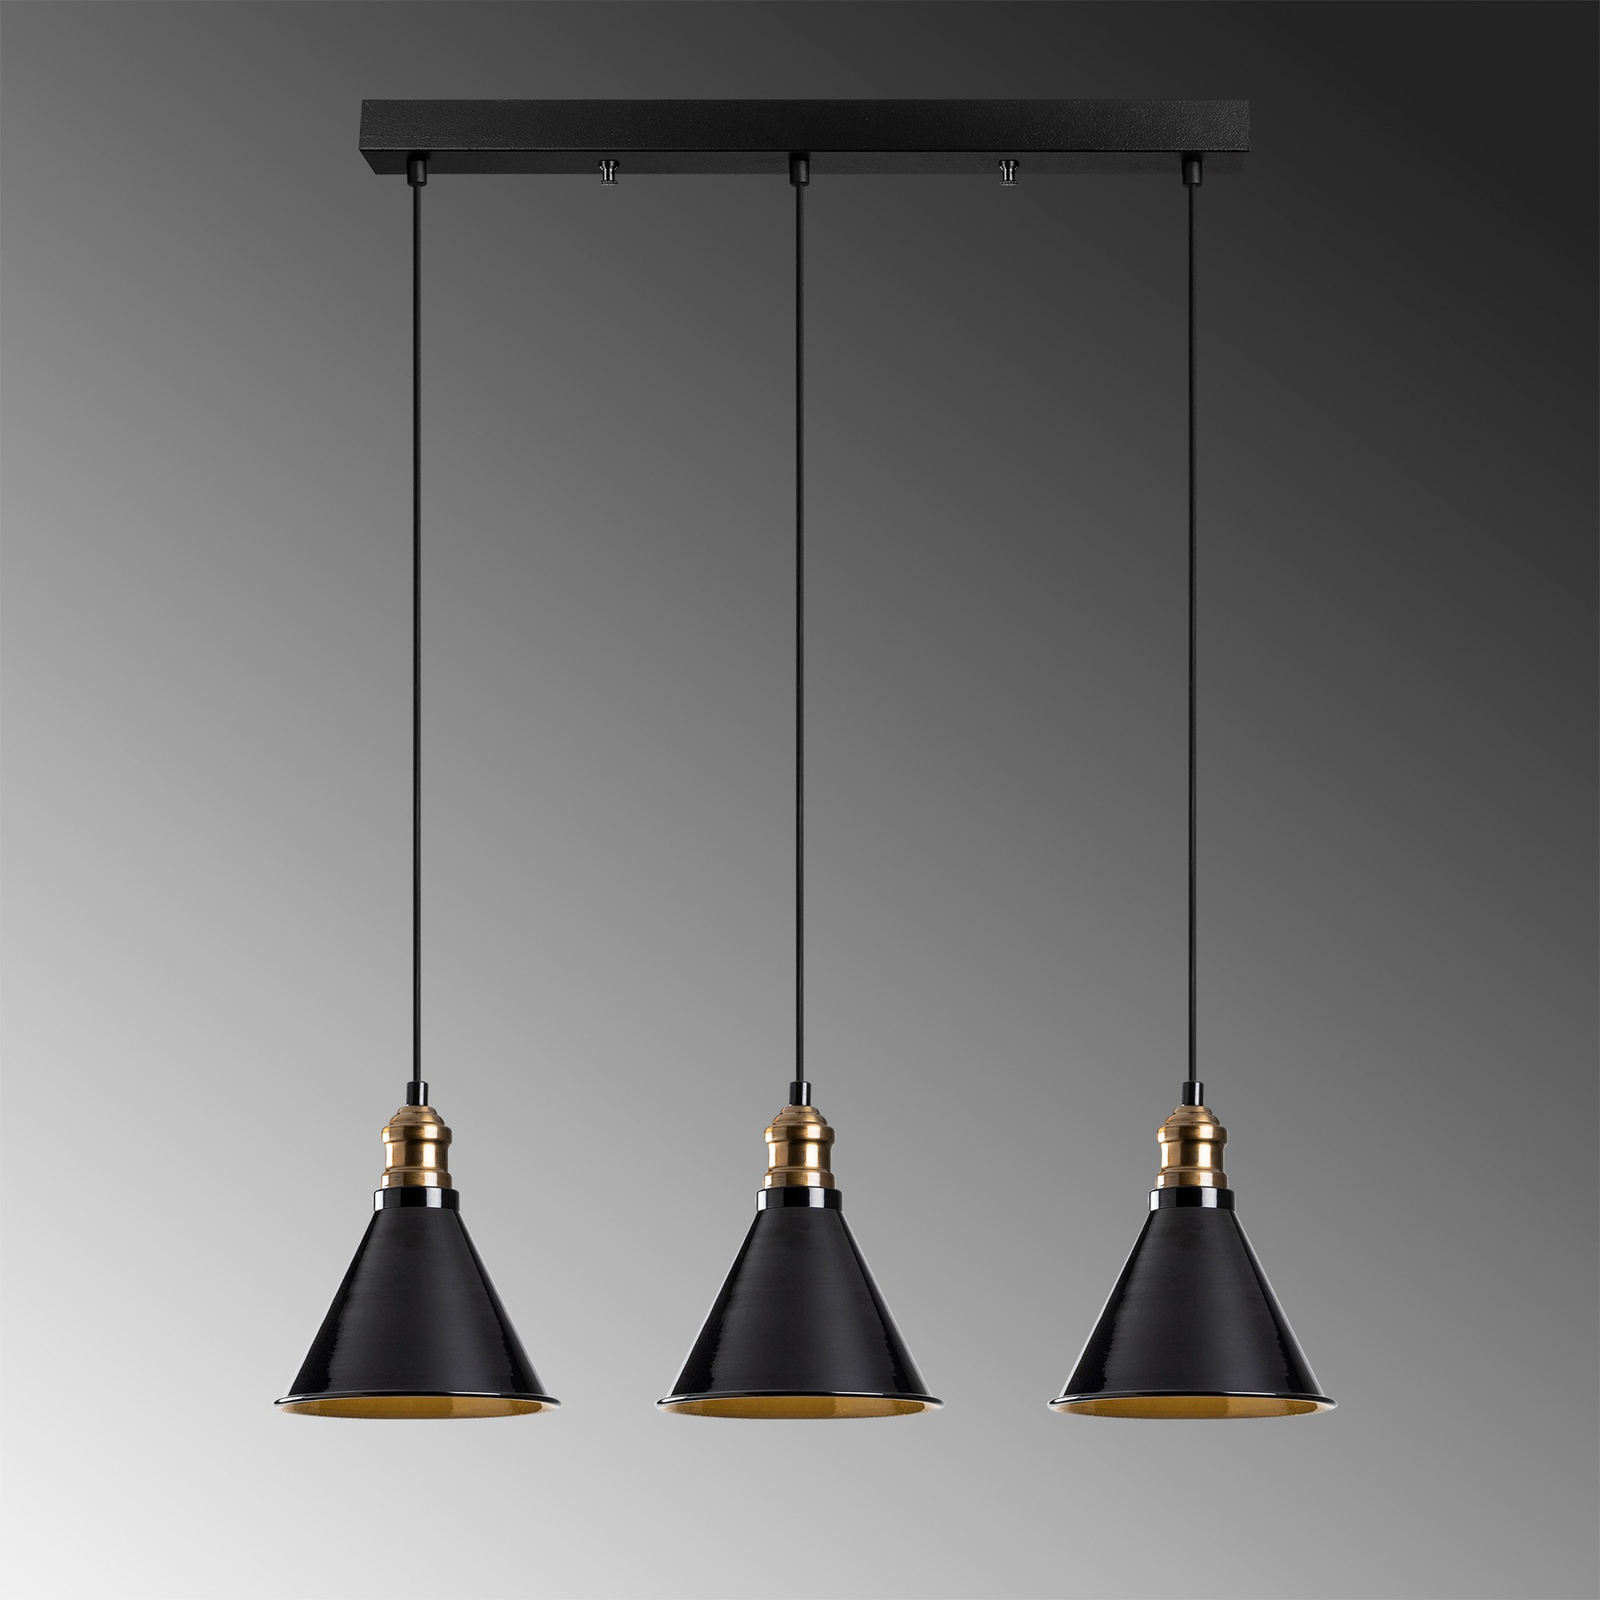 Hanglamp Berceste 251-S1 3-lamps zwart/goud